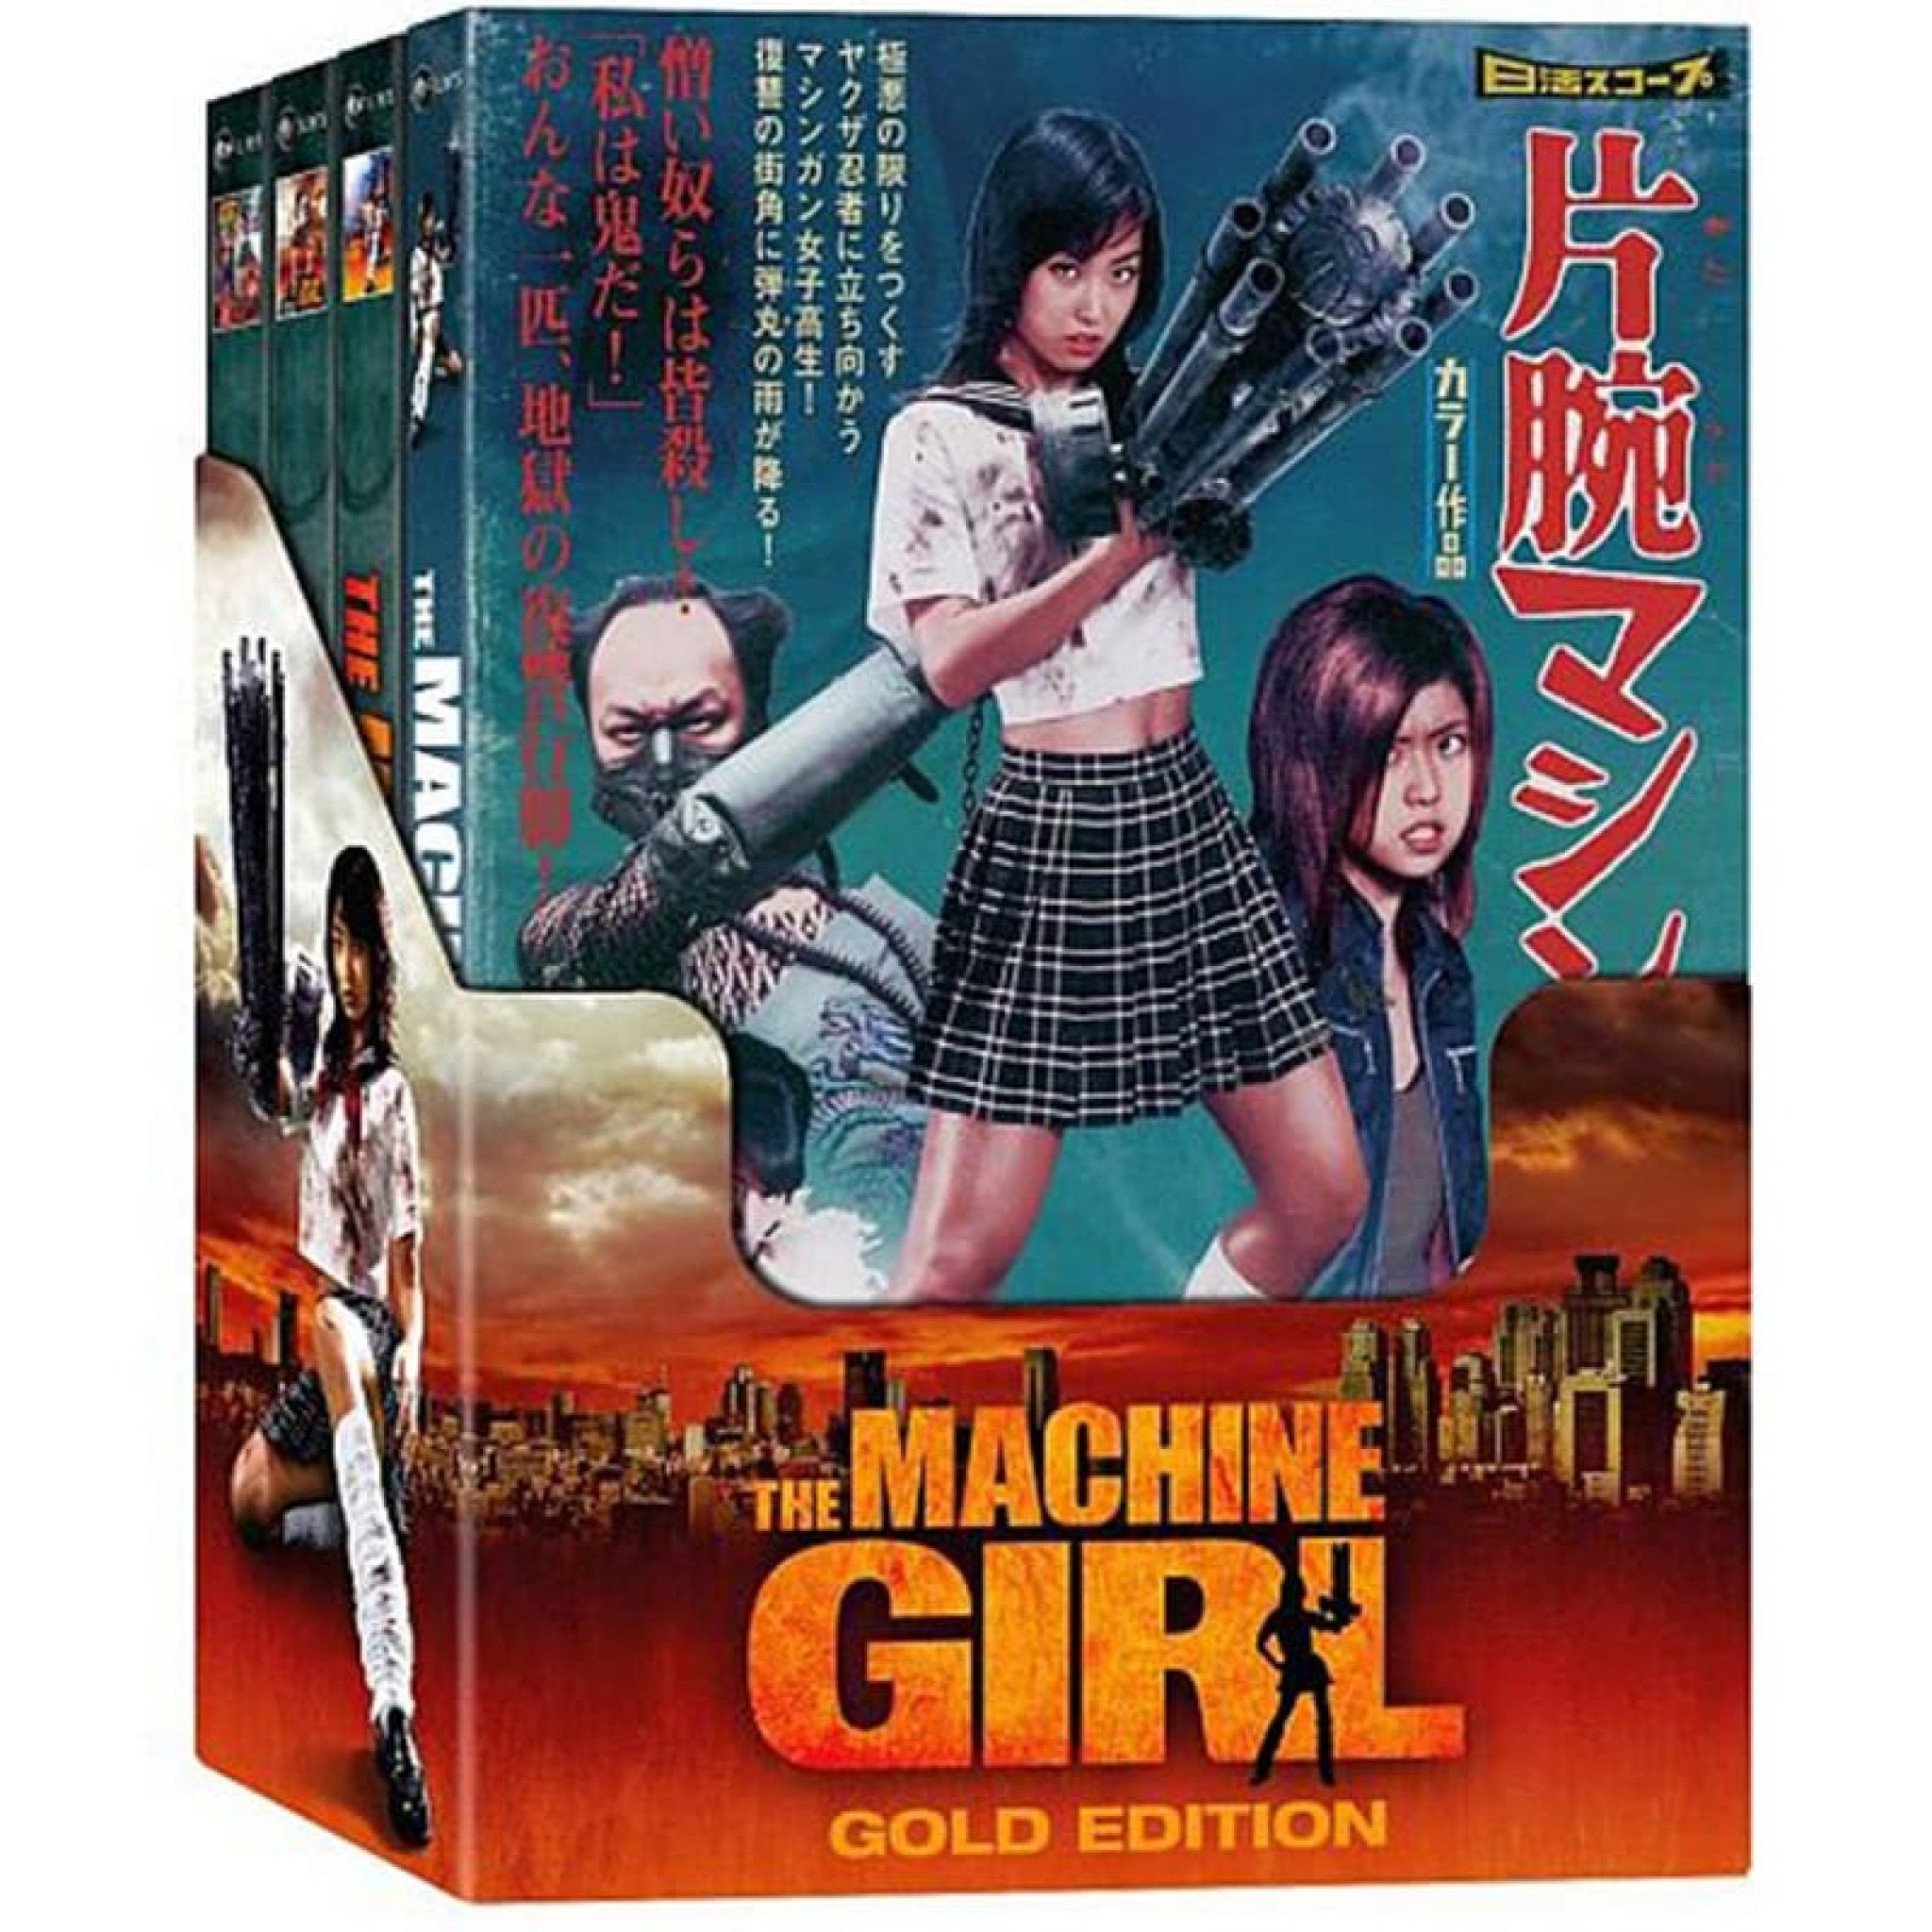 "The Machine Girl" erscheint in 3 Bluray Mediabooks und als Limited